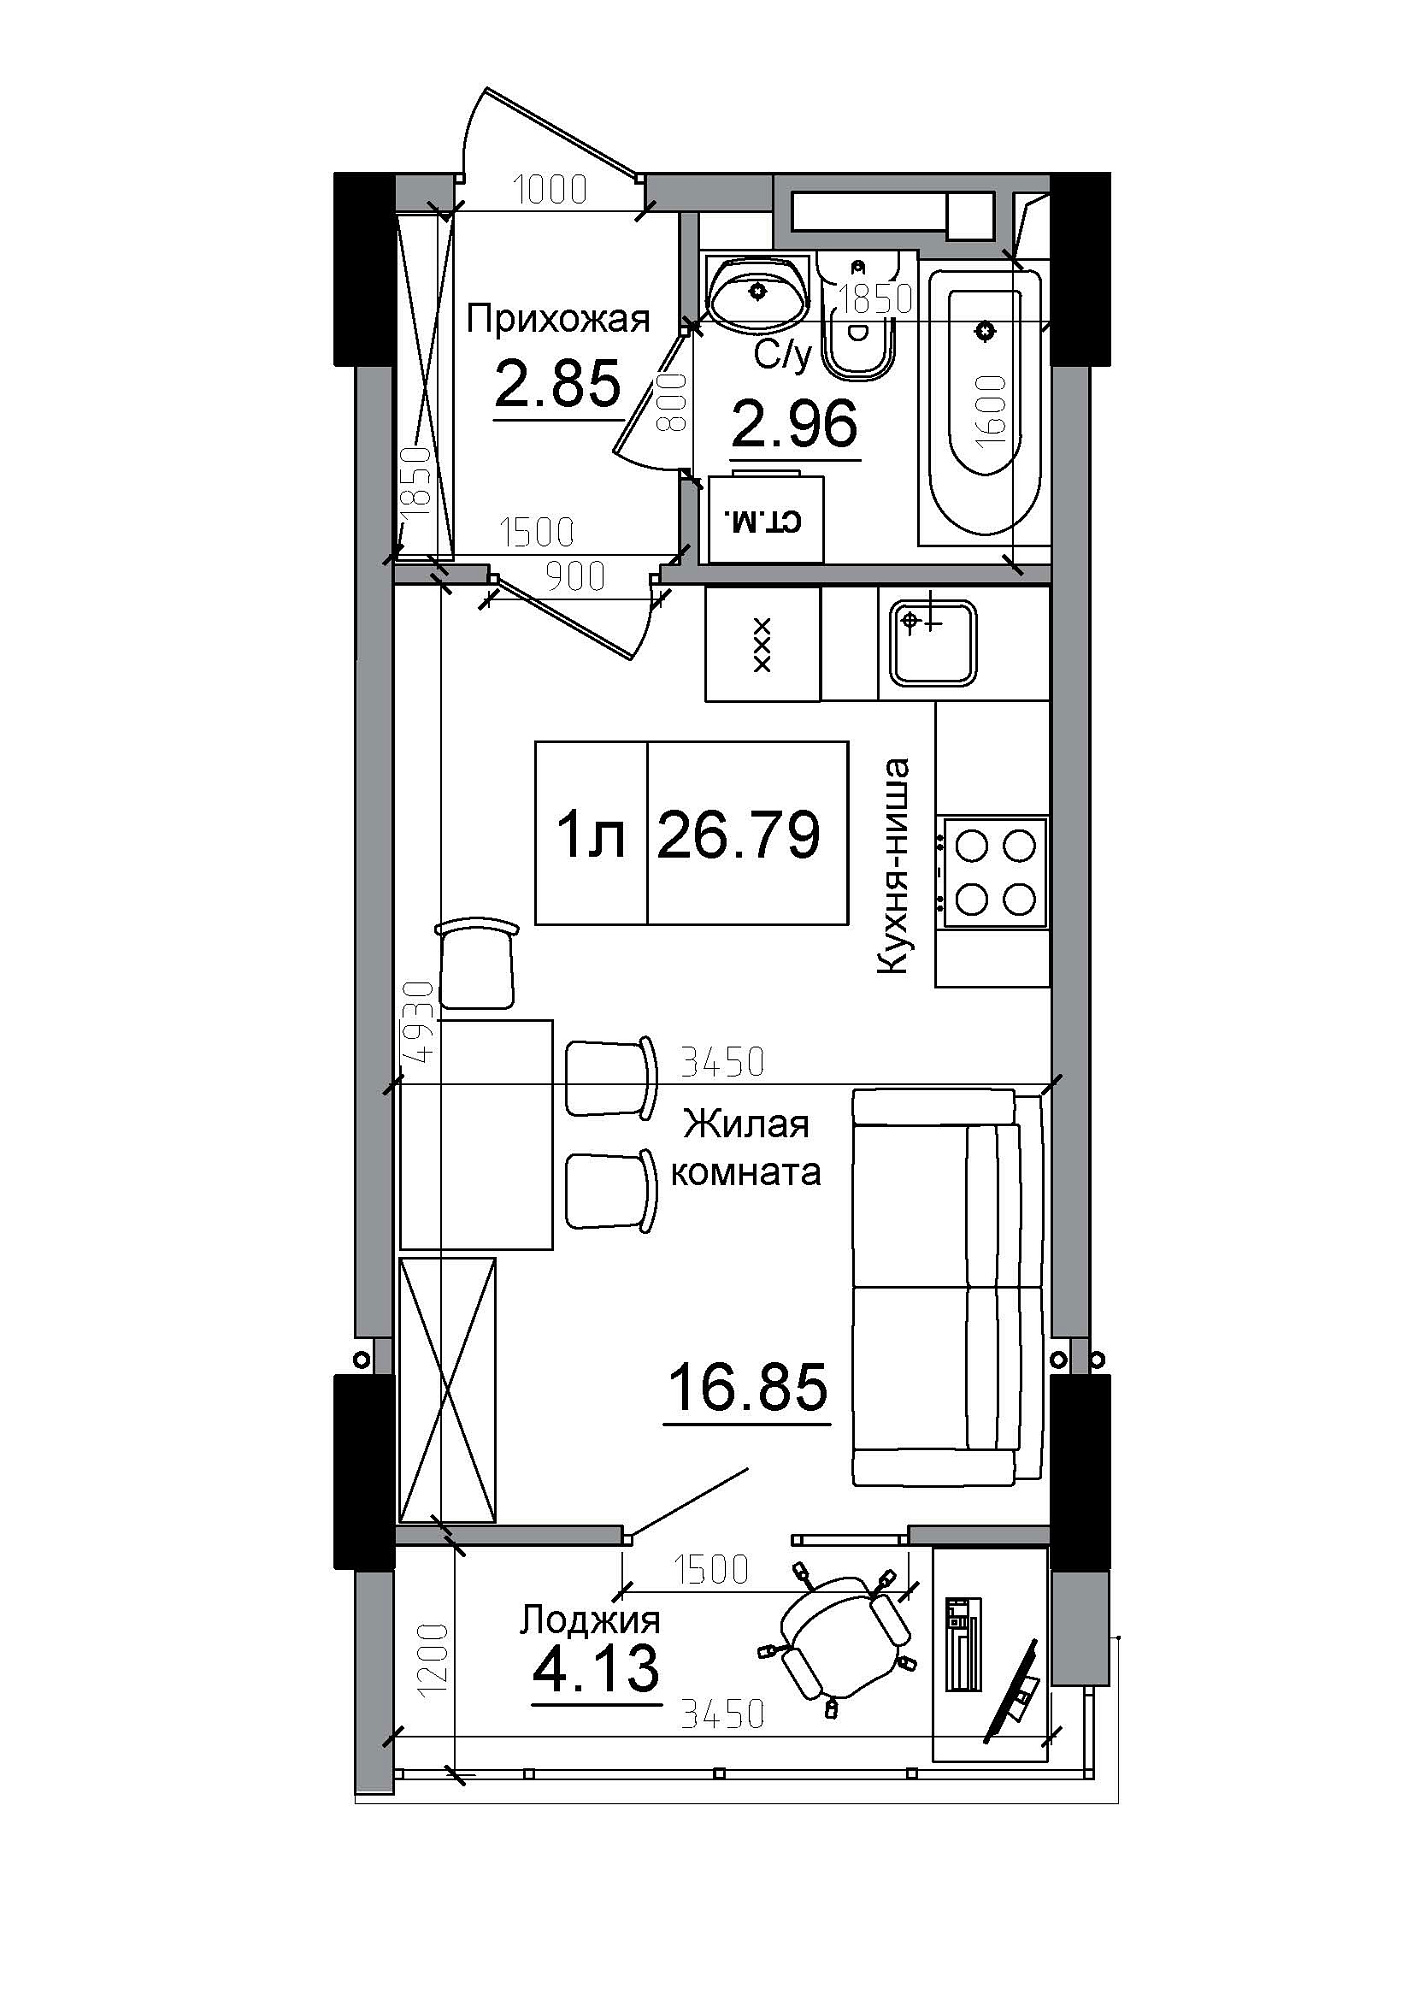 Планування Smart-квартира площею 26.79м2, AB-12-09/00014.